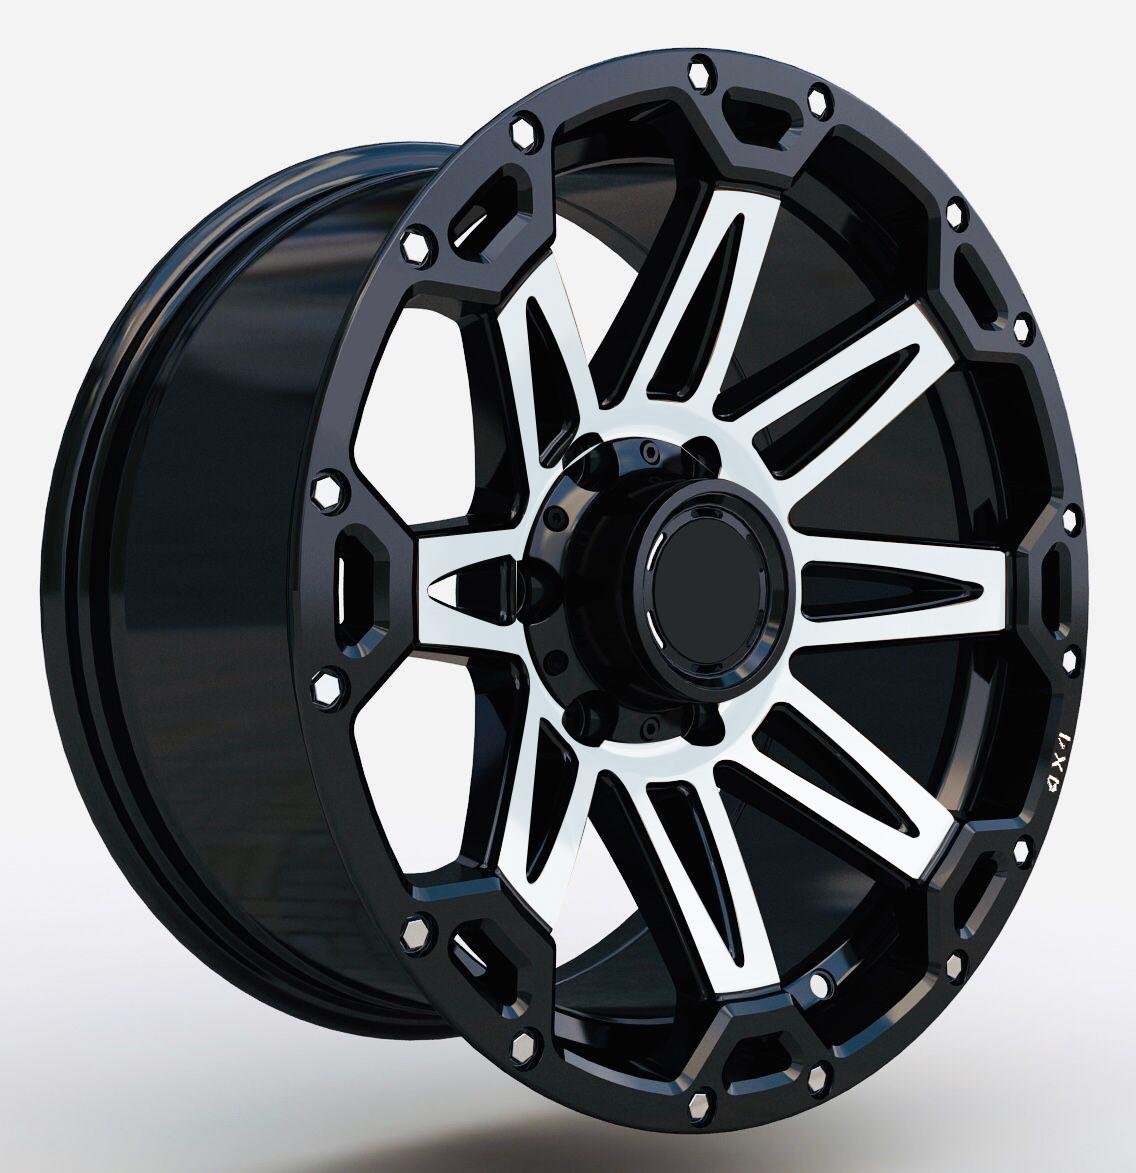 Alloy Wheels-6x139.7 5